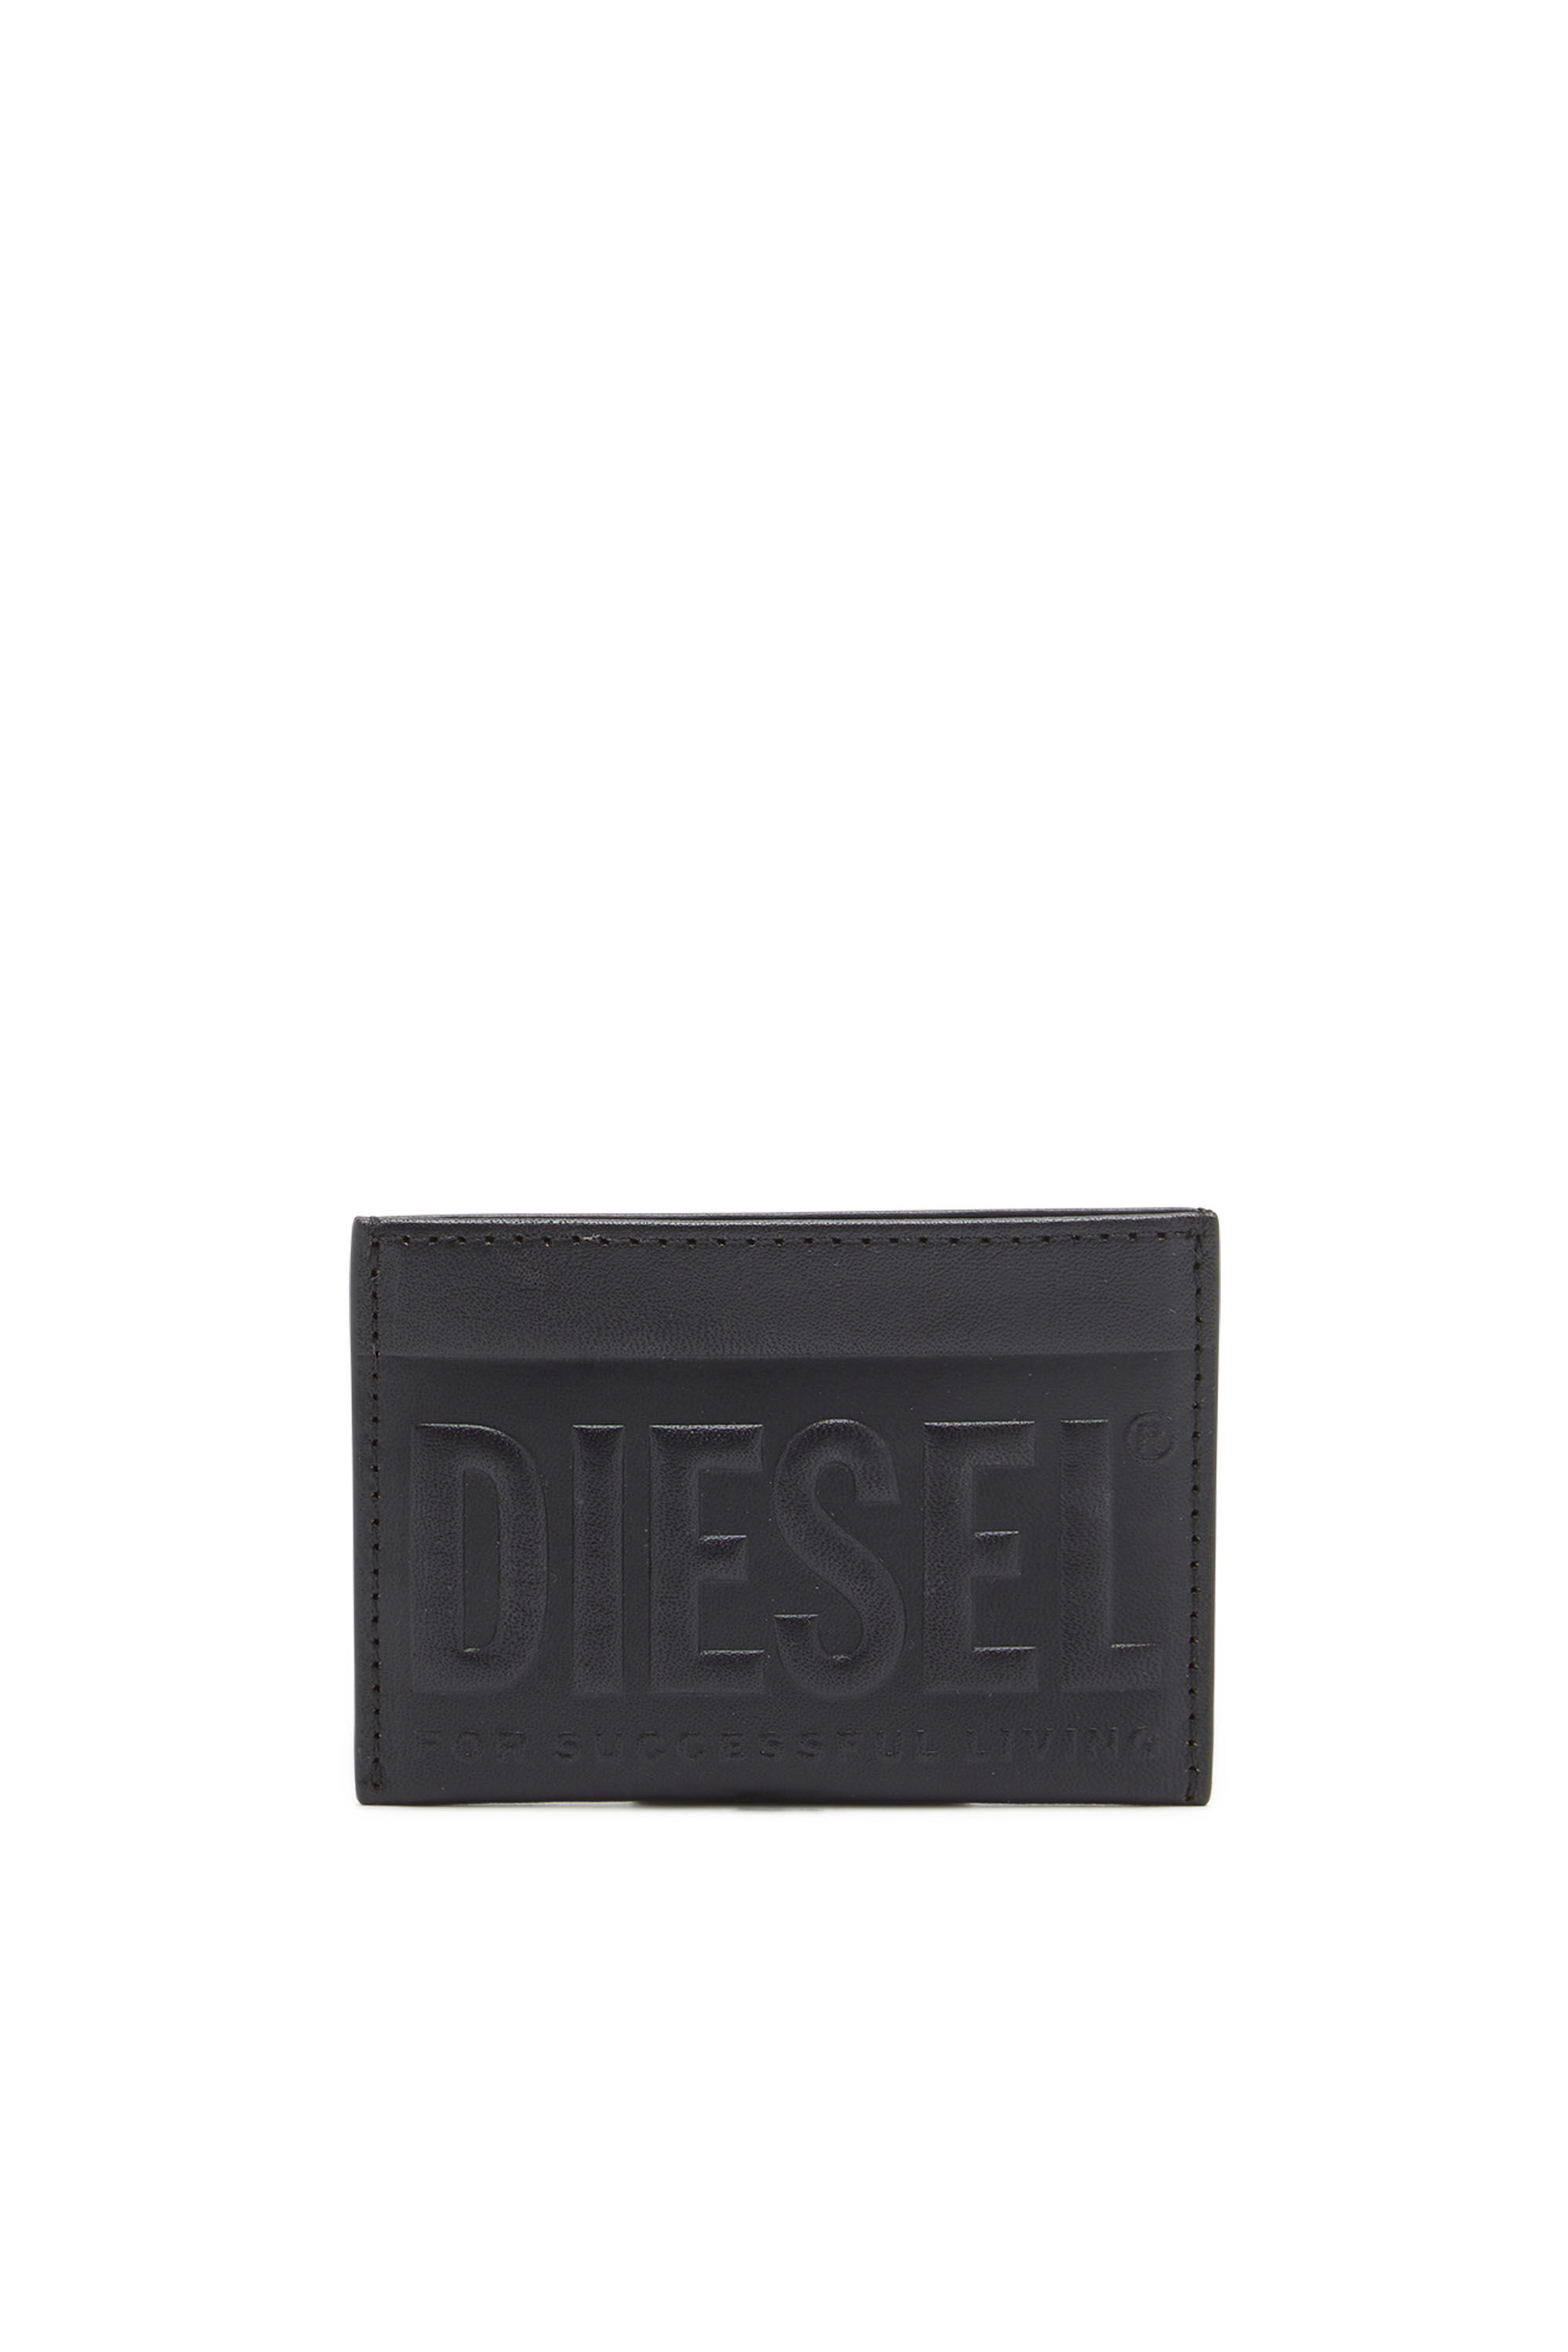 Diesel - DSL 3D EASY CARD HOLDER, ブラック - Image 1